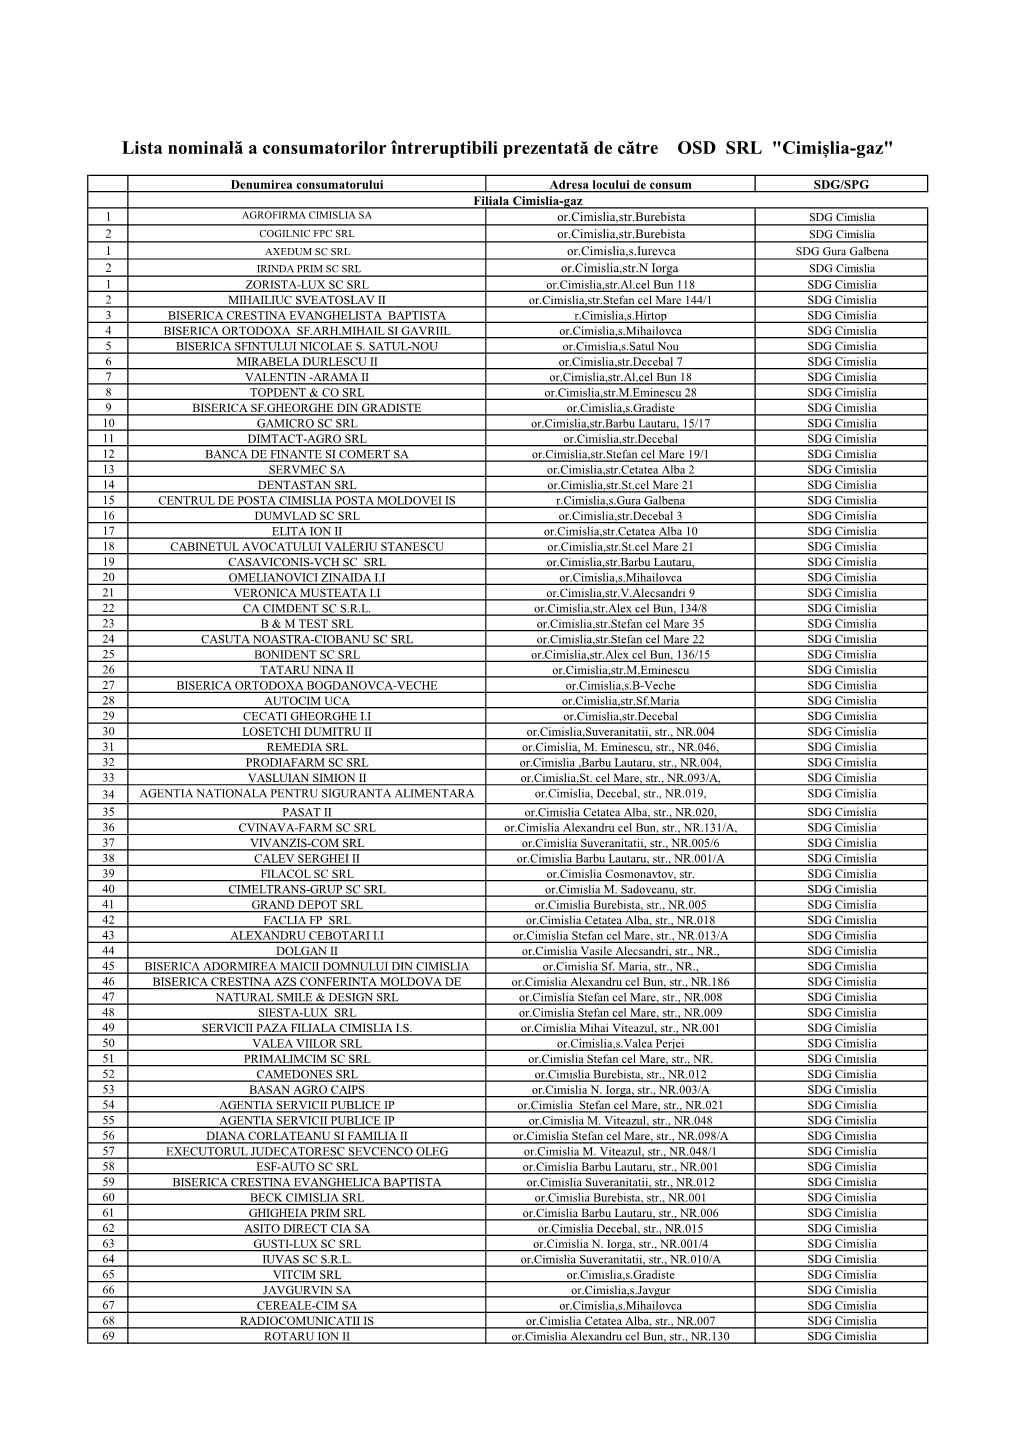 Lista Nominală a Consumatorilor Întreruptibili Prezentată De Către OSD SRL "Cimișlia-Gaz"